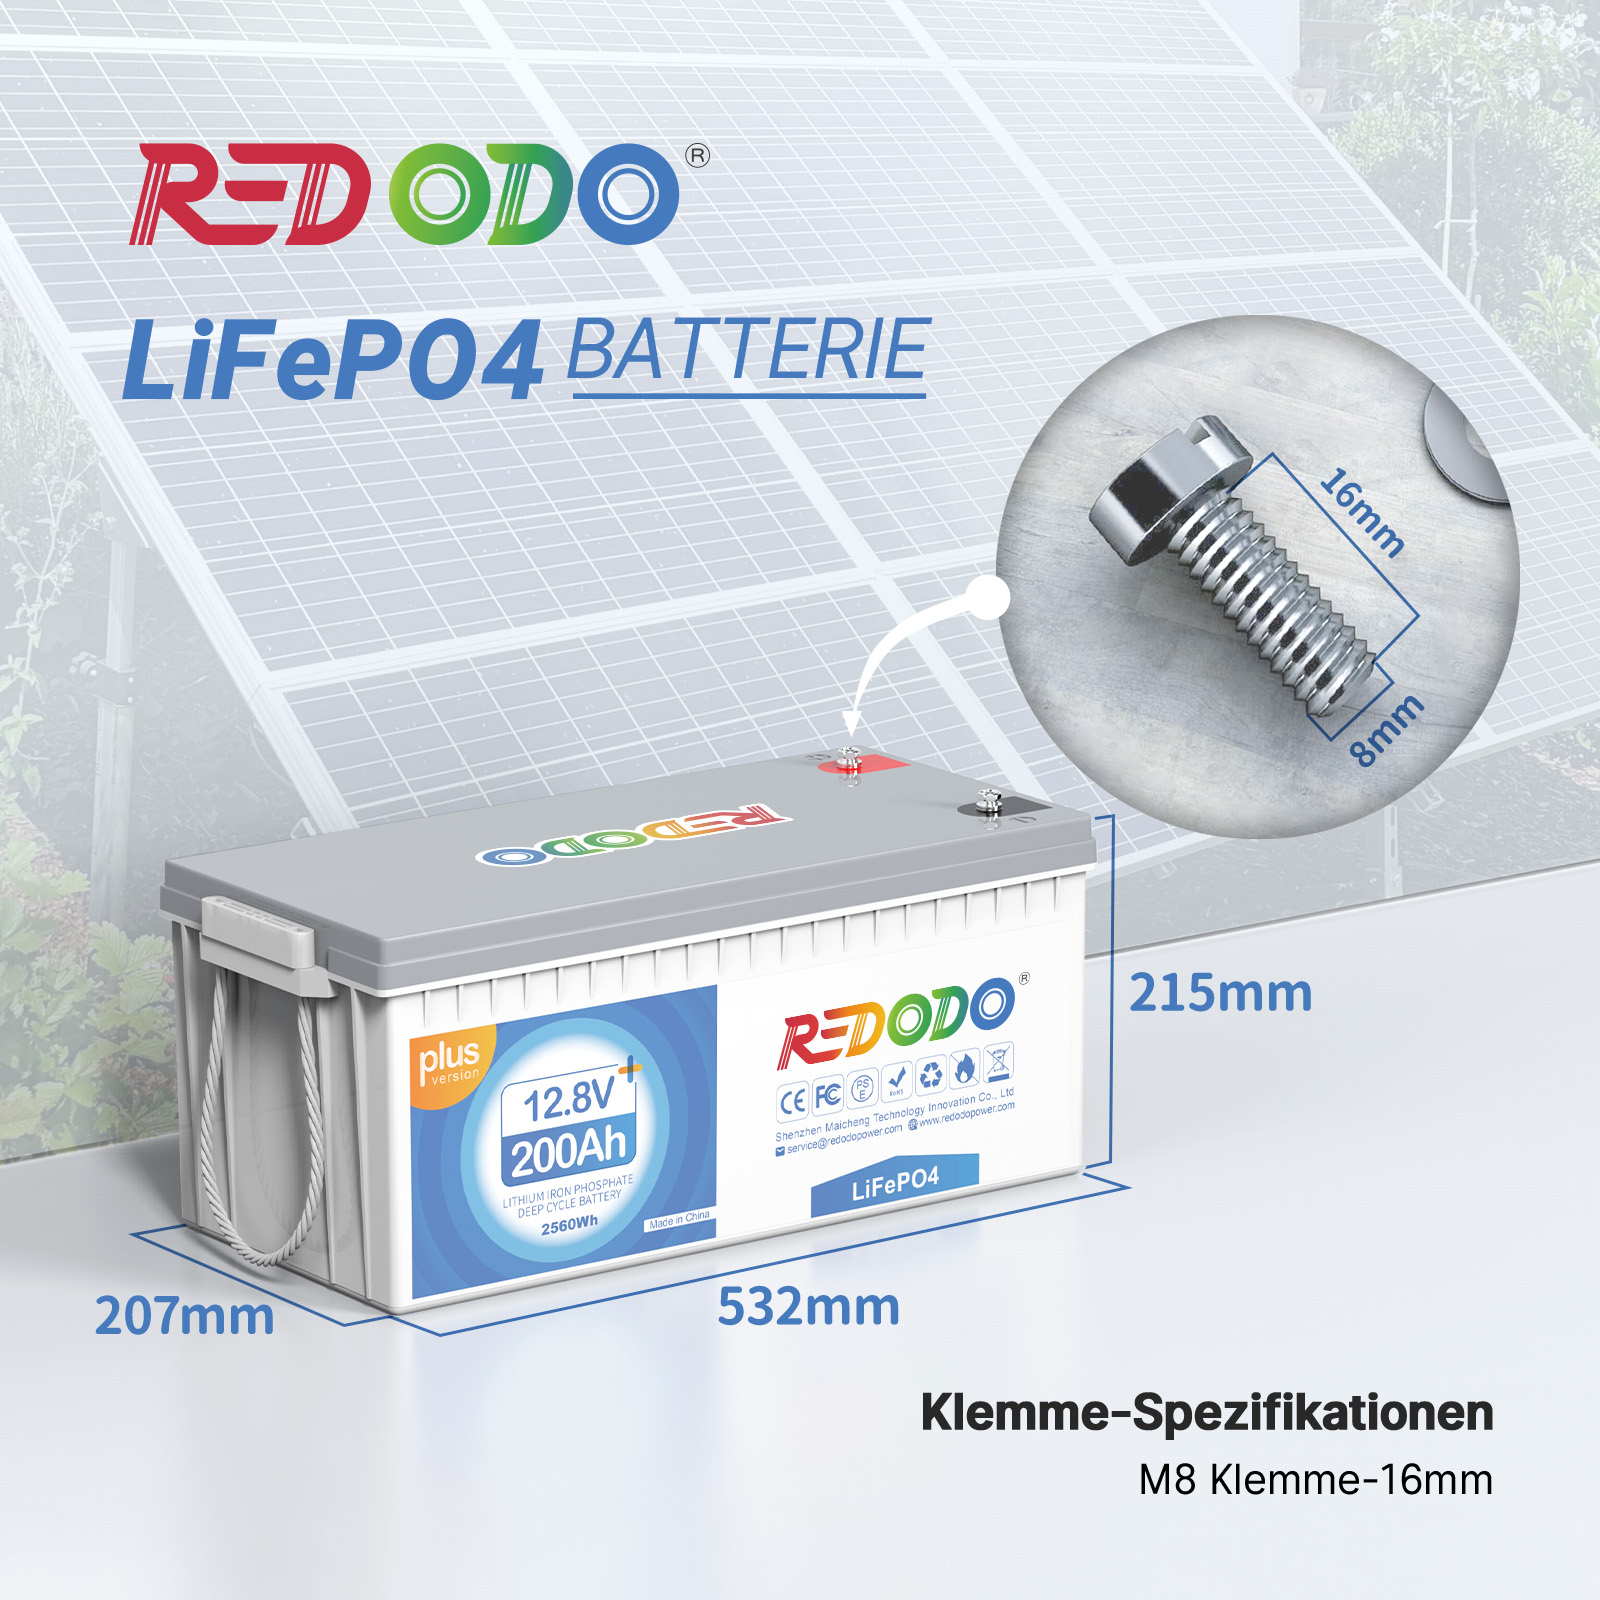 Redodo-LiFePo4-Ladegeraet-Vergleich-Wirkungsgrad - Tueftler-und